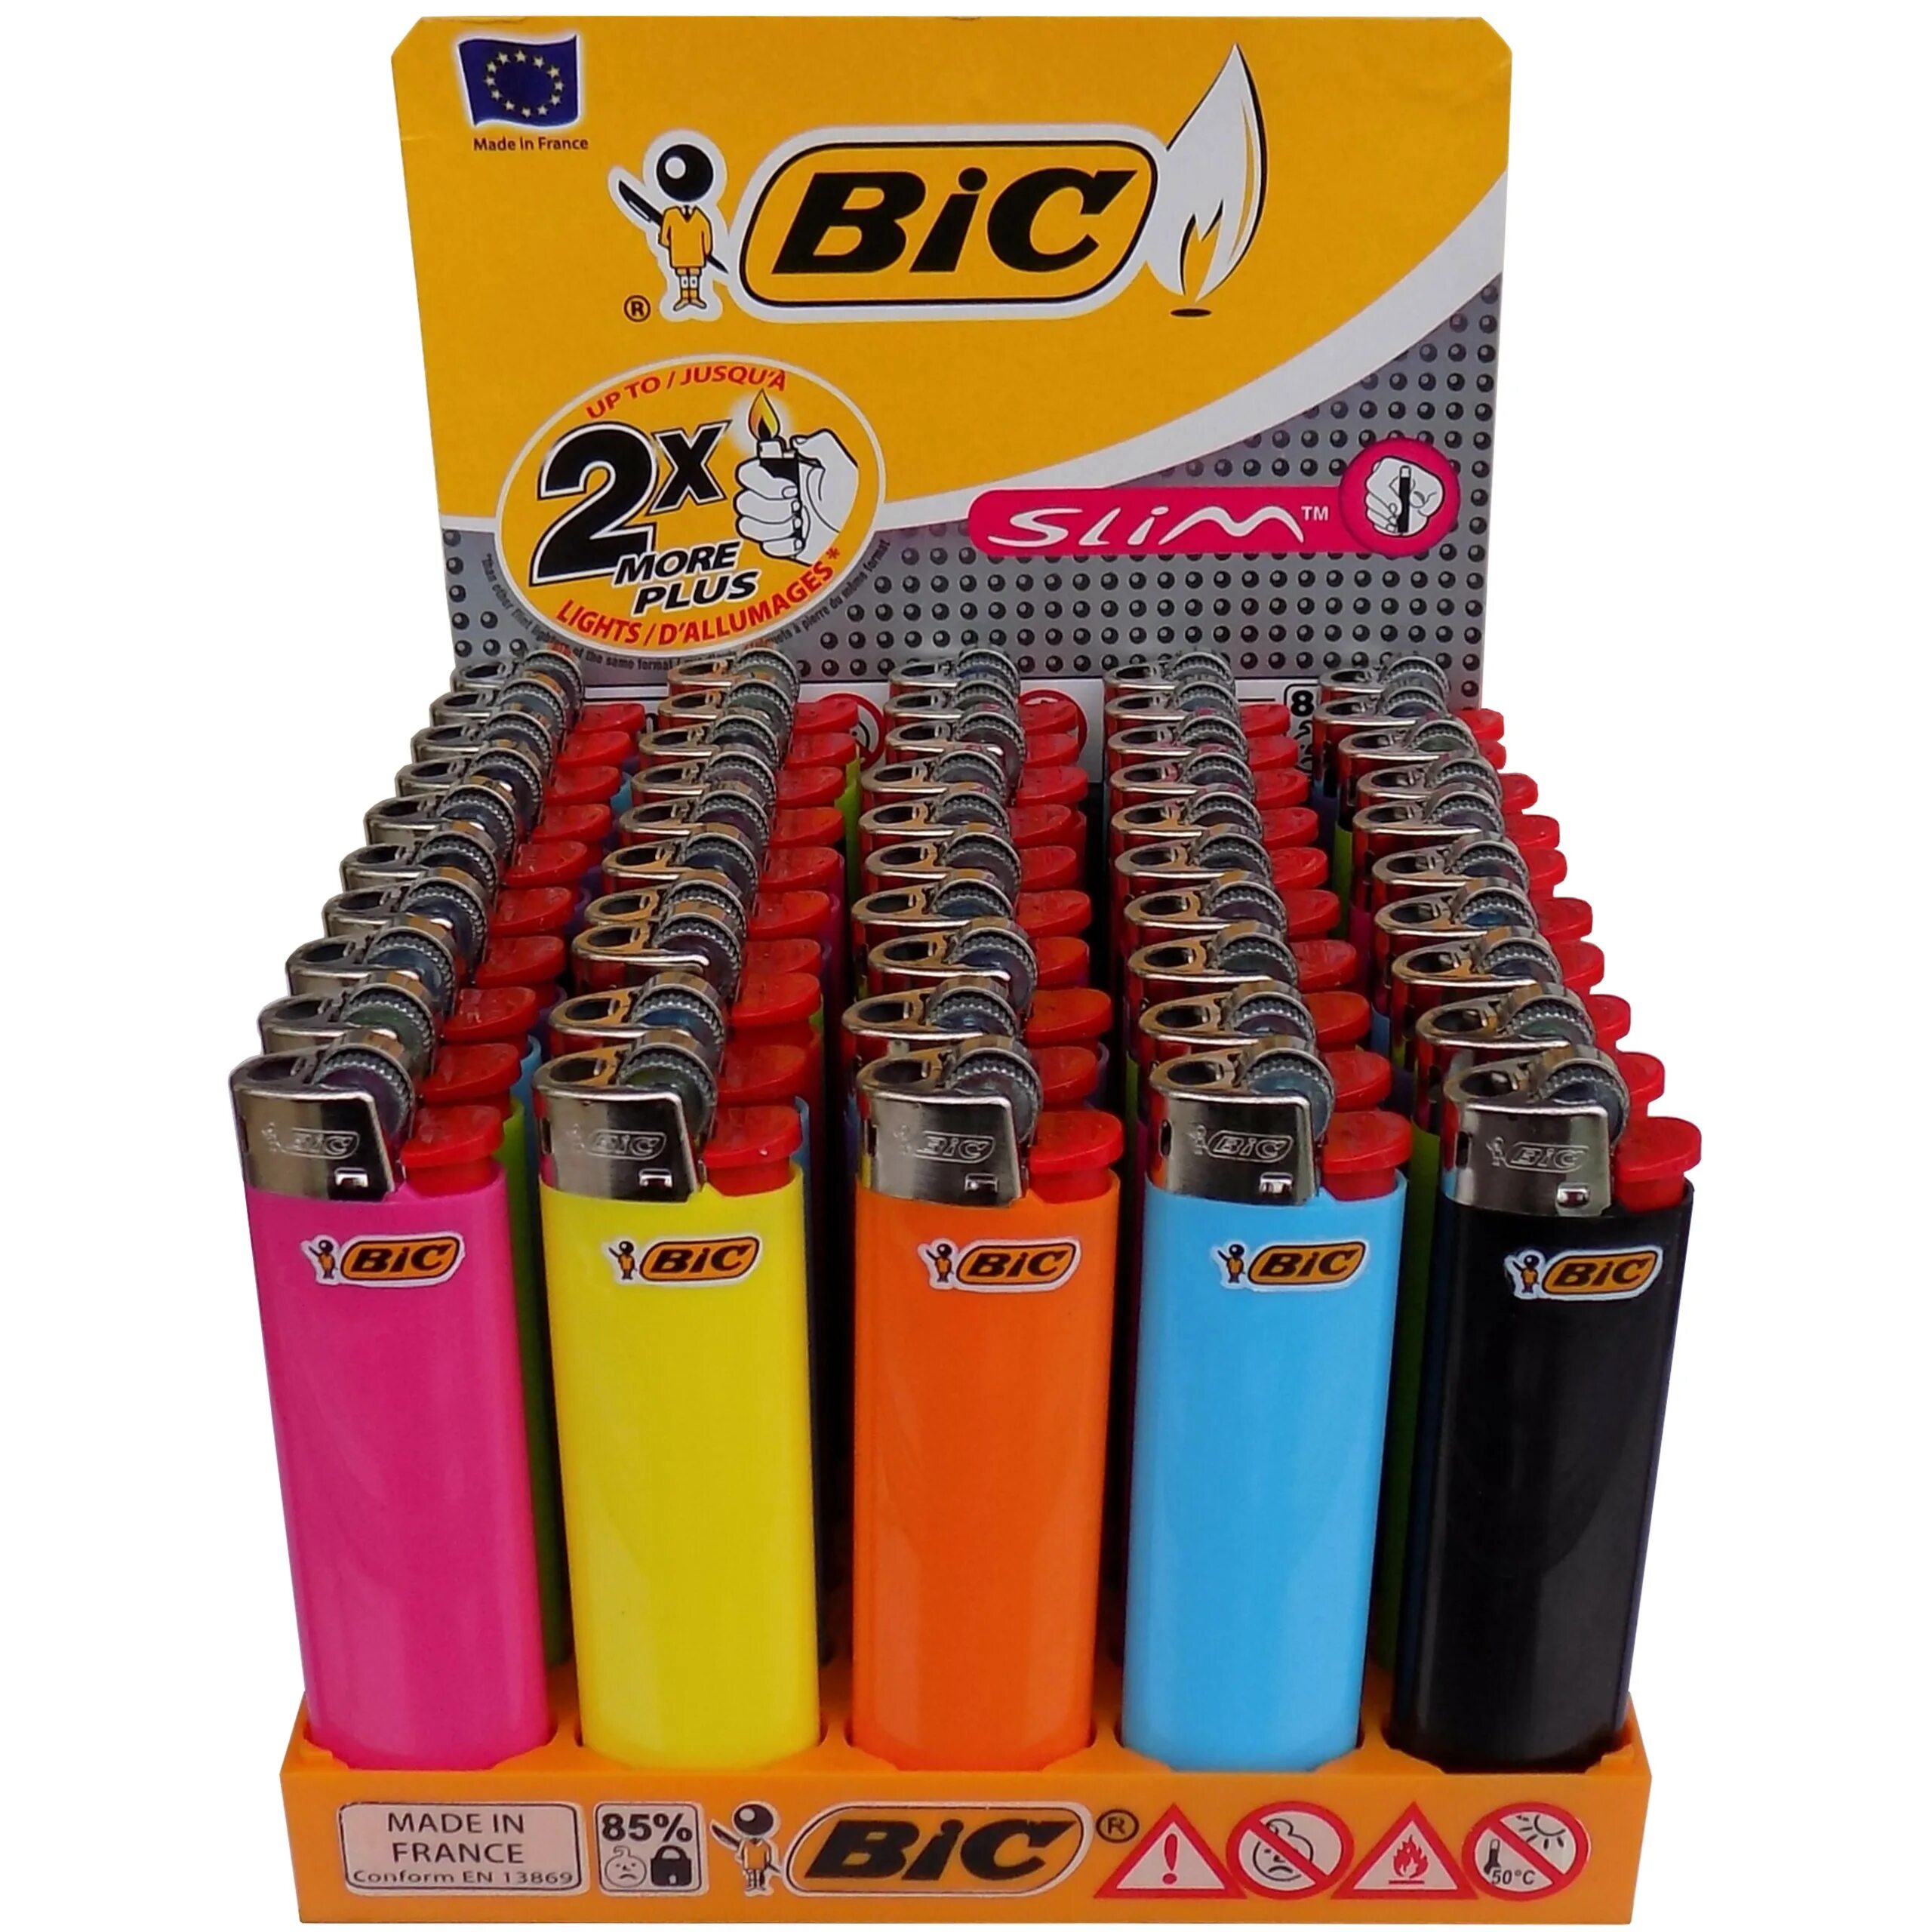 Зажигалка бик. Зажигалка BIC j3 цветная. Зажигалки BIC j3 Slim. Зажигалки BIC Slim j3 Miami. Зажигалки "BIC" 1/50.